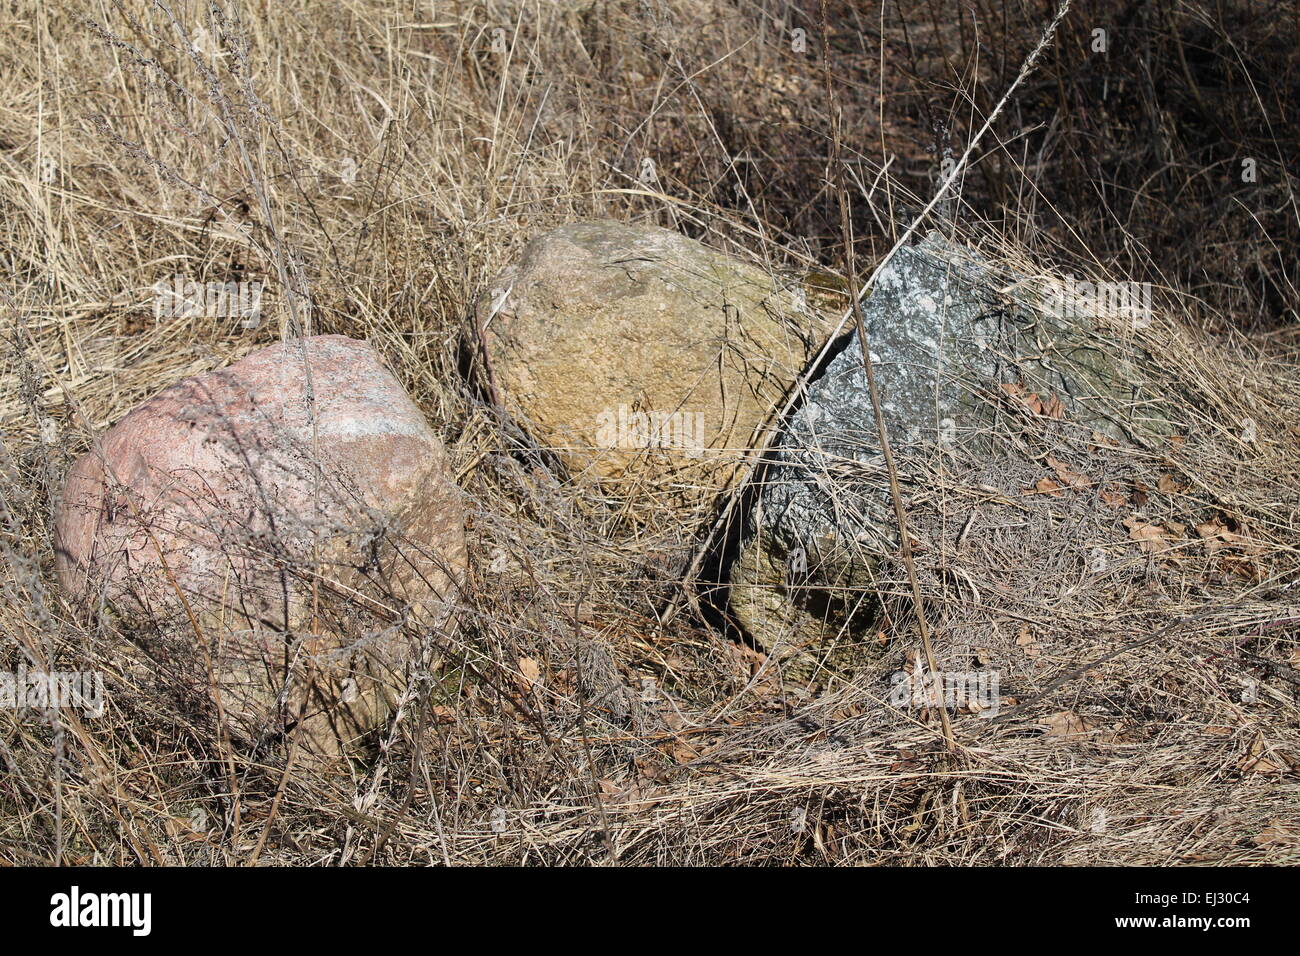 drei großen glatte Steinen verstecken sich in gelben Trockenrasen Stockfoto